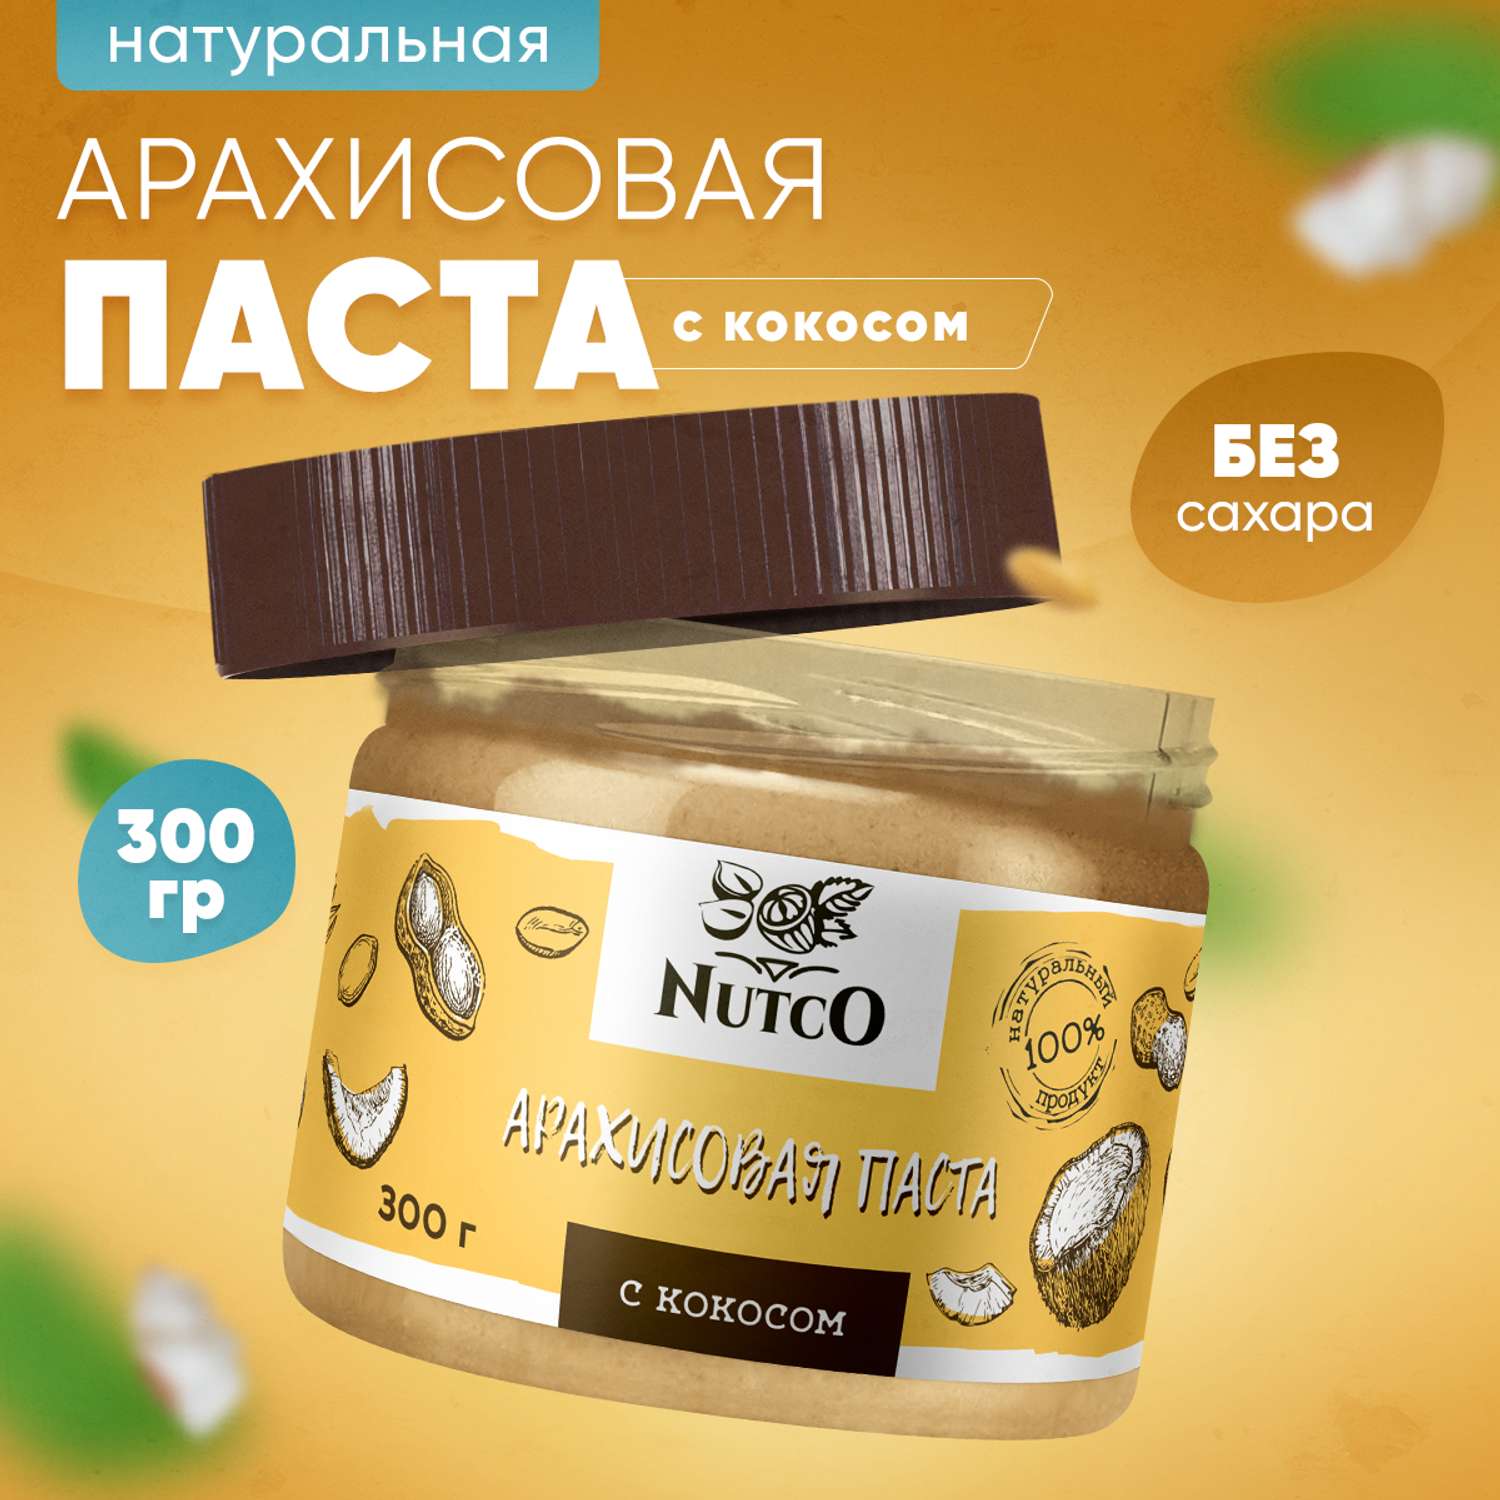 Арахисовая паста с кокосом Nutco натуральная без сахара - фото 1